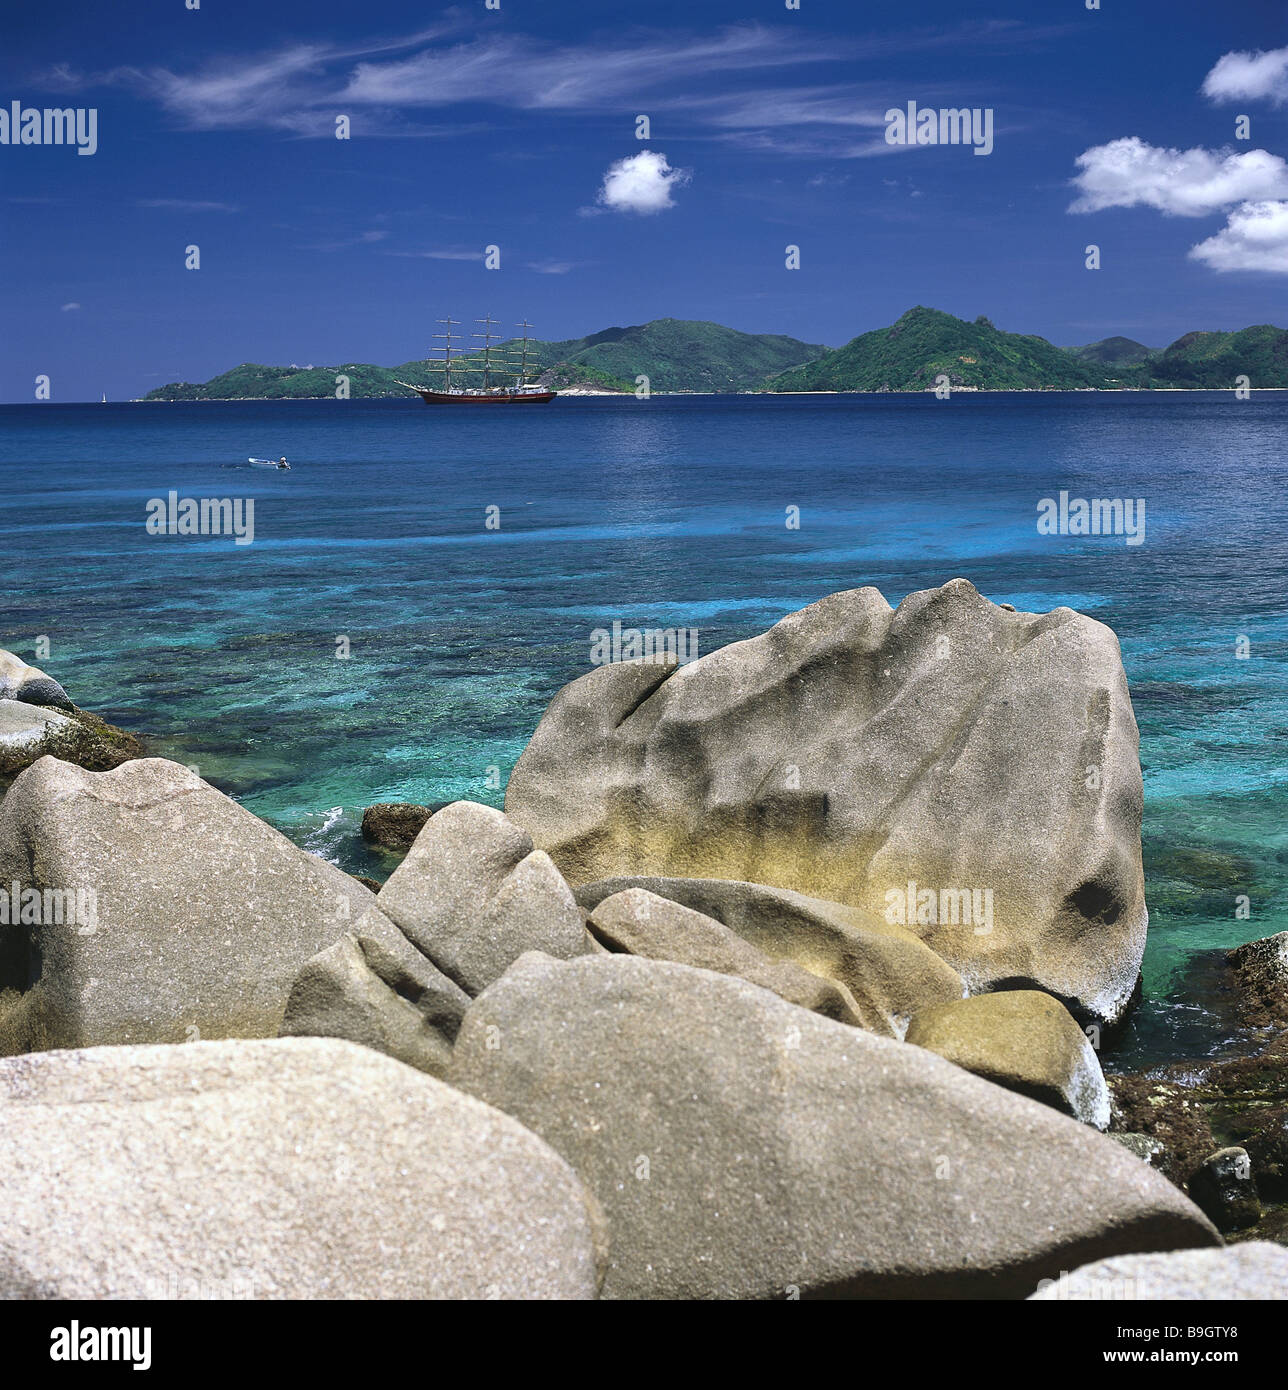 https://c8.alamy.com/comp/B9GTY8/seychelles-la-digue-beach-rocks-gaze-praslin-island-island-state-island-B9GTY8.jpg